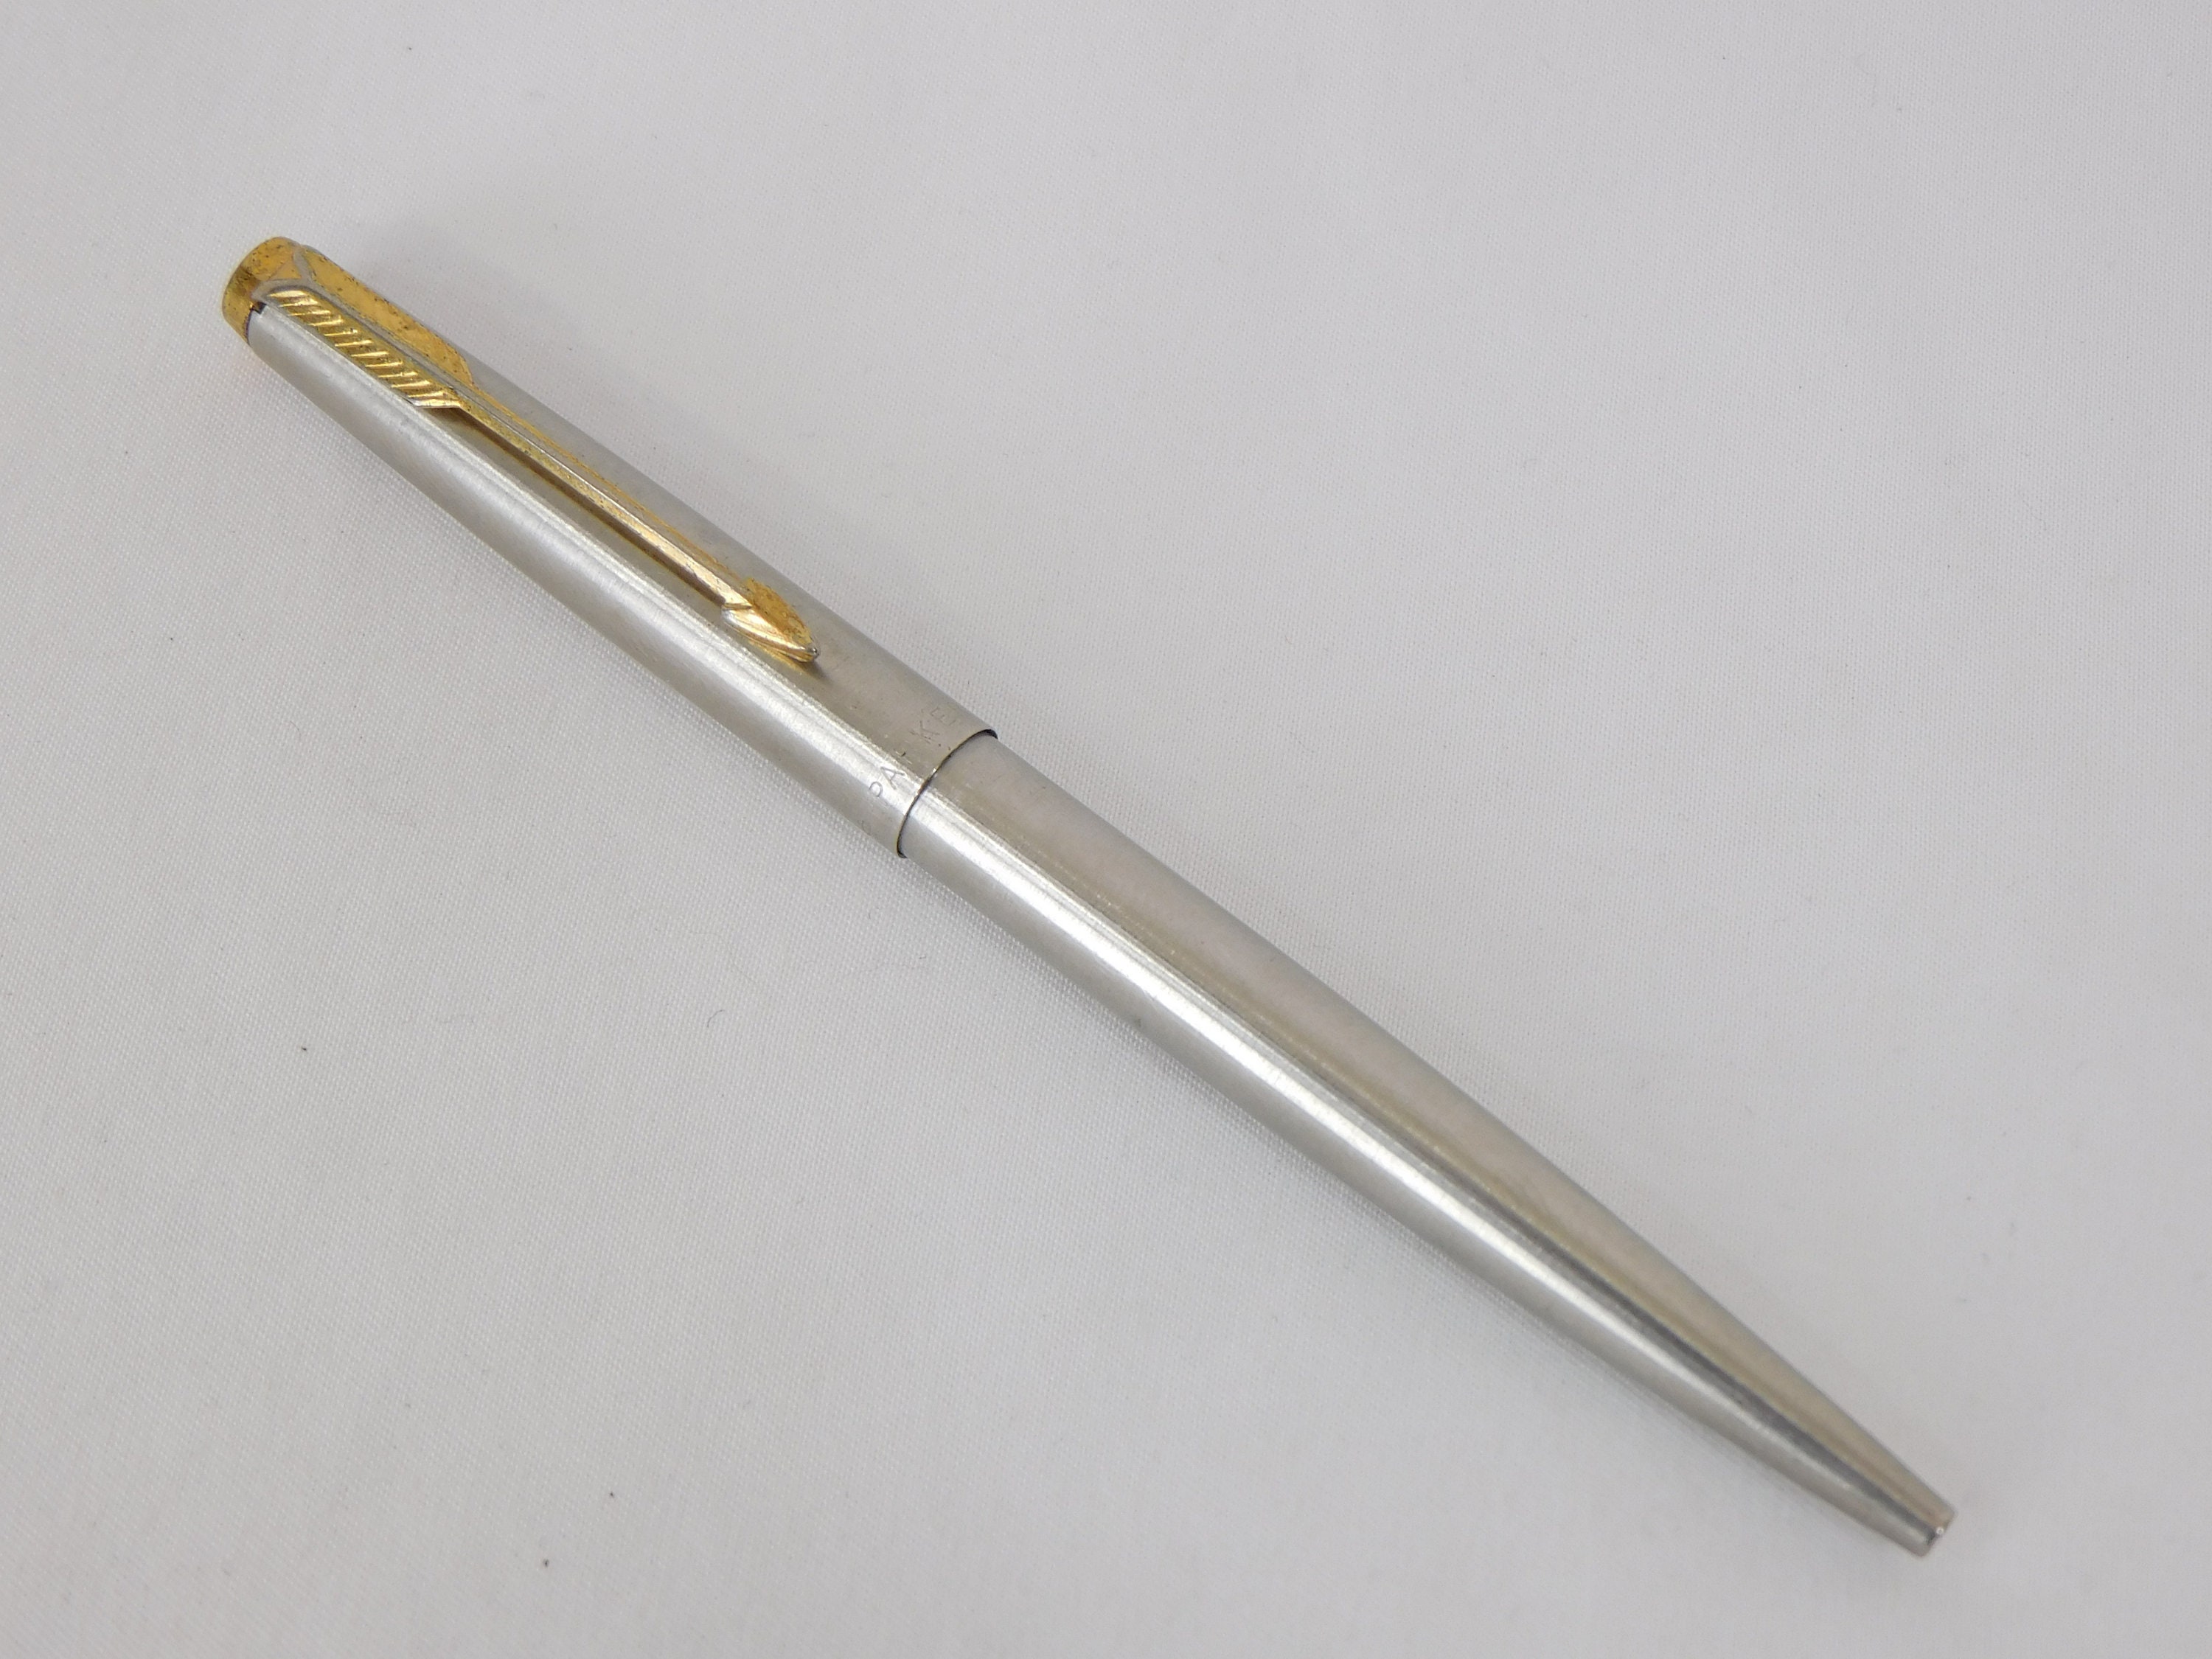 Parker Vector XL Metallic M Marker Pen Silver